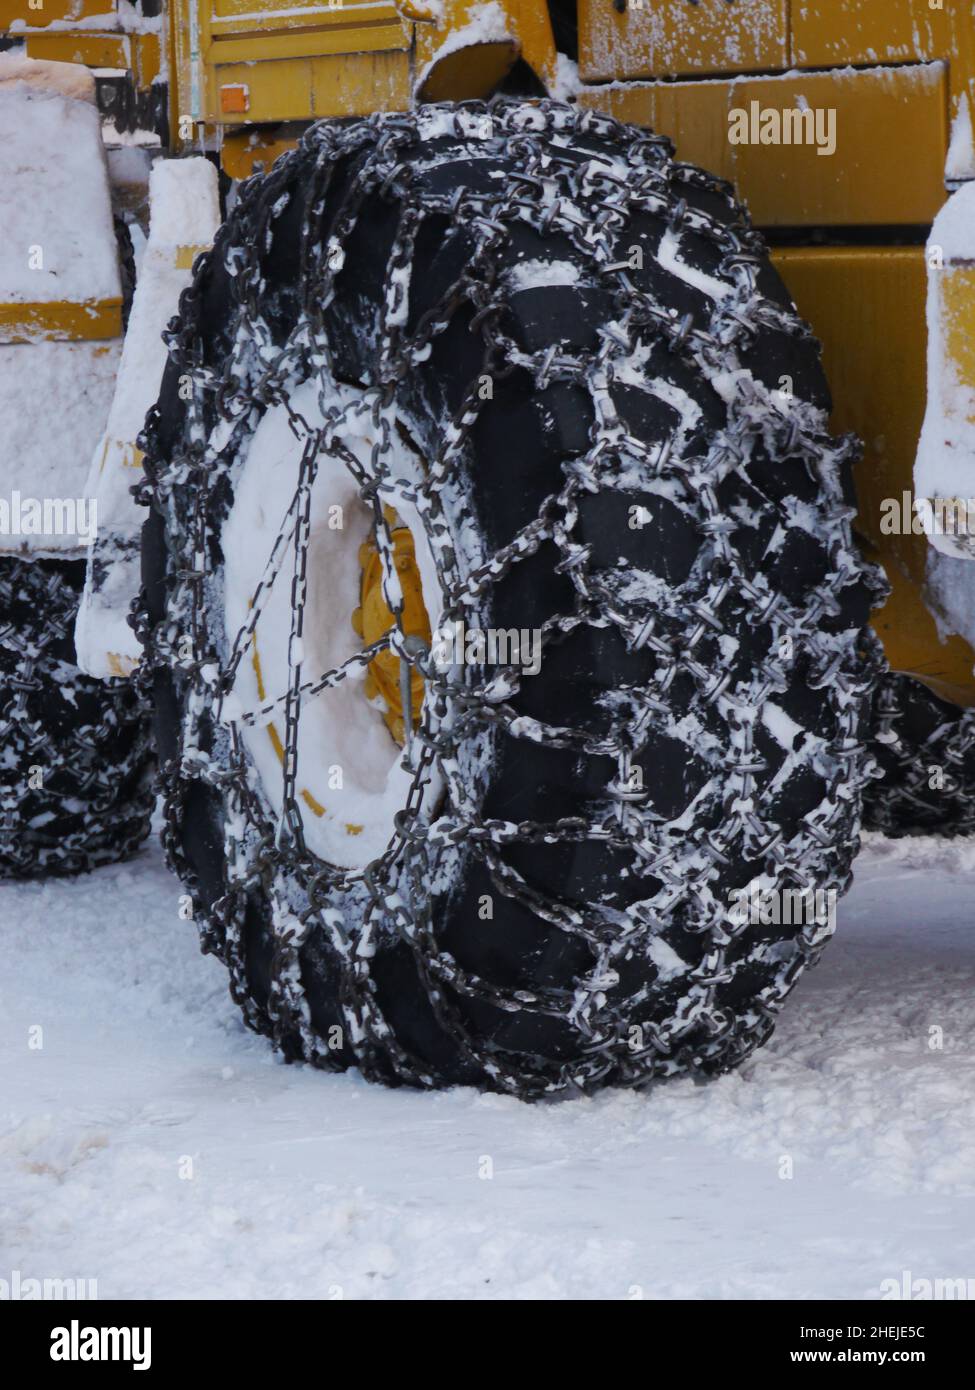 Schneekette für Reifen Stockfotografie - Alamy